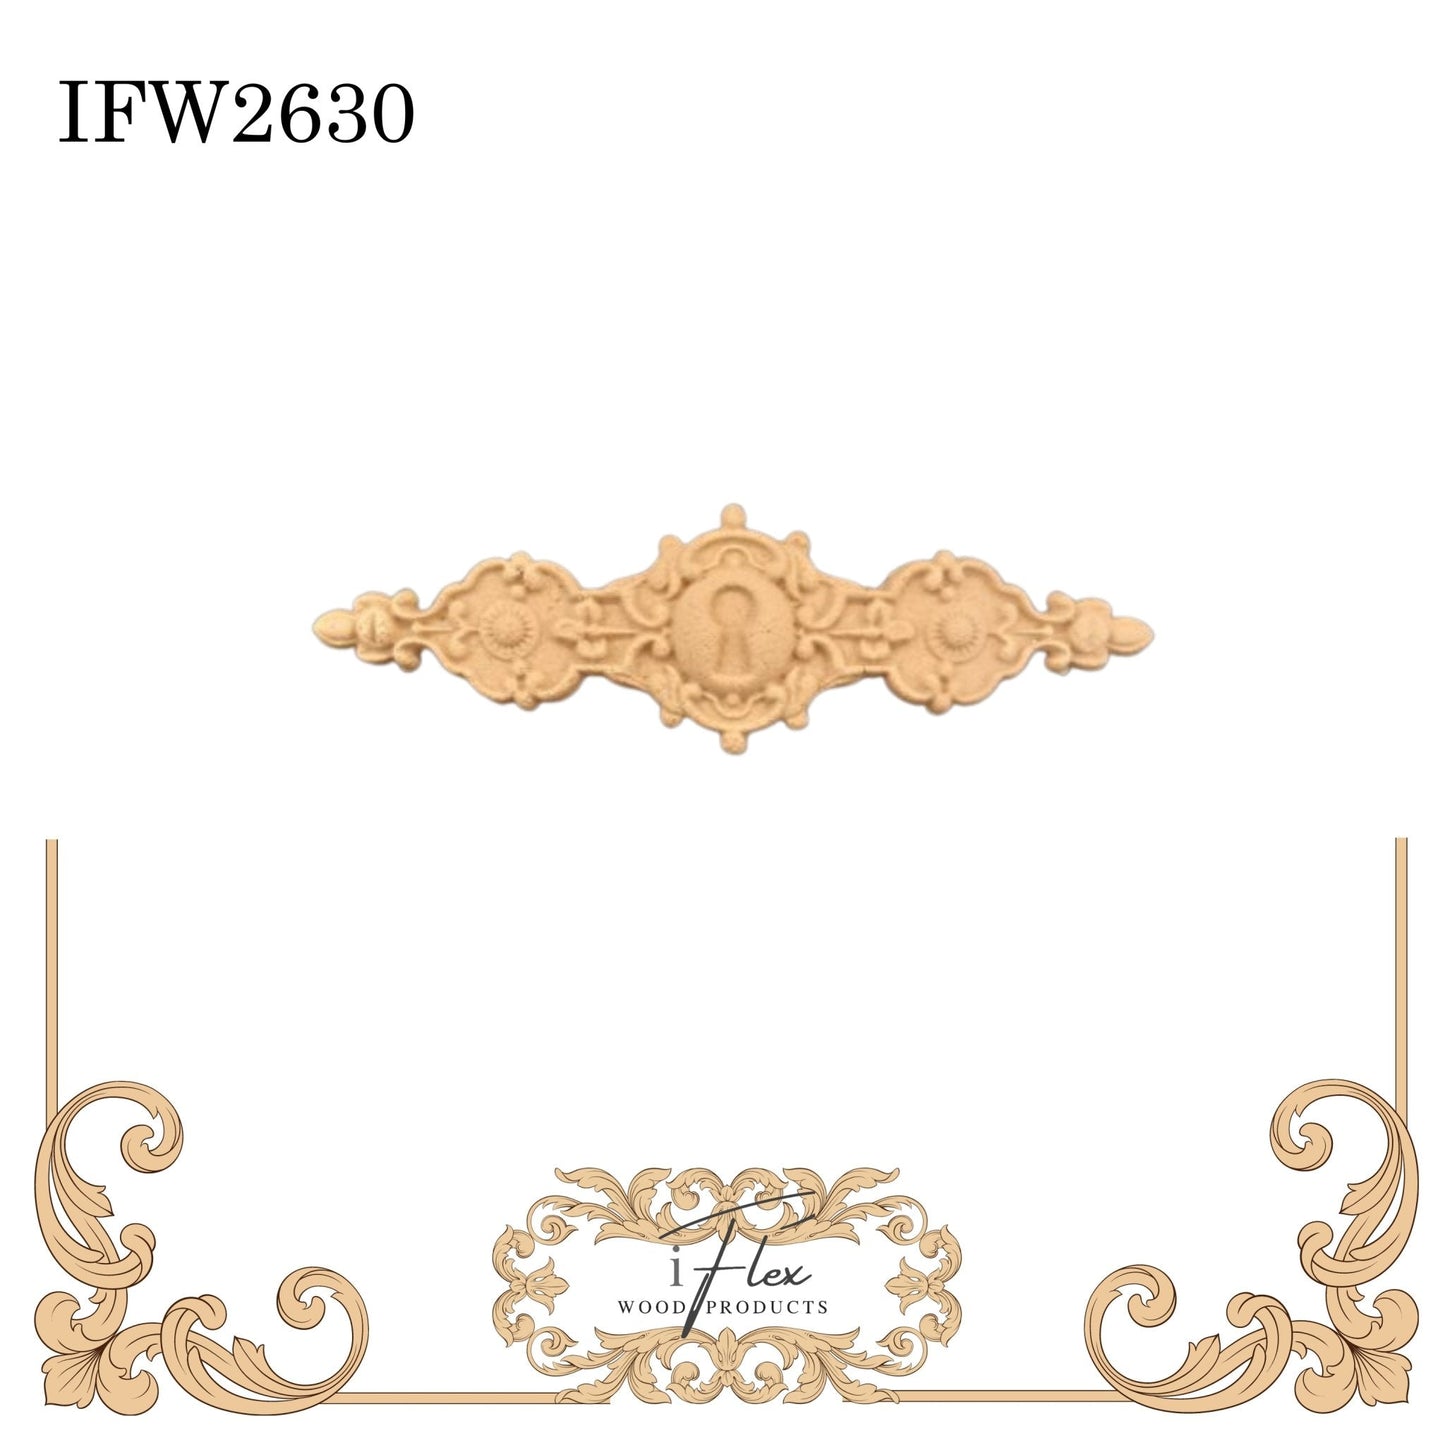 IFW 2630